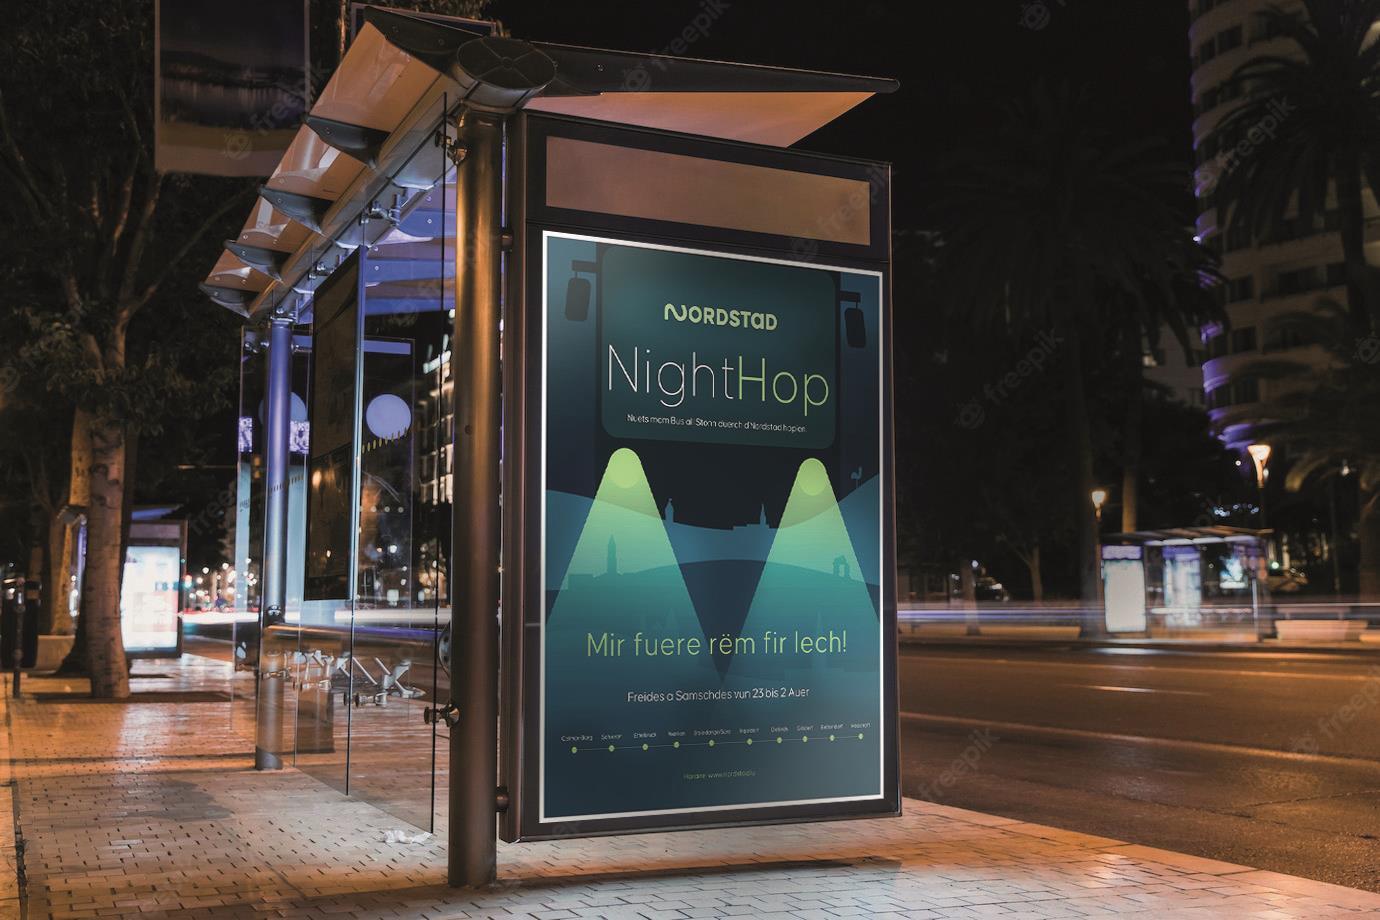 Nighthop - NightHop - Bus de nuit gratuit